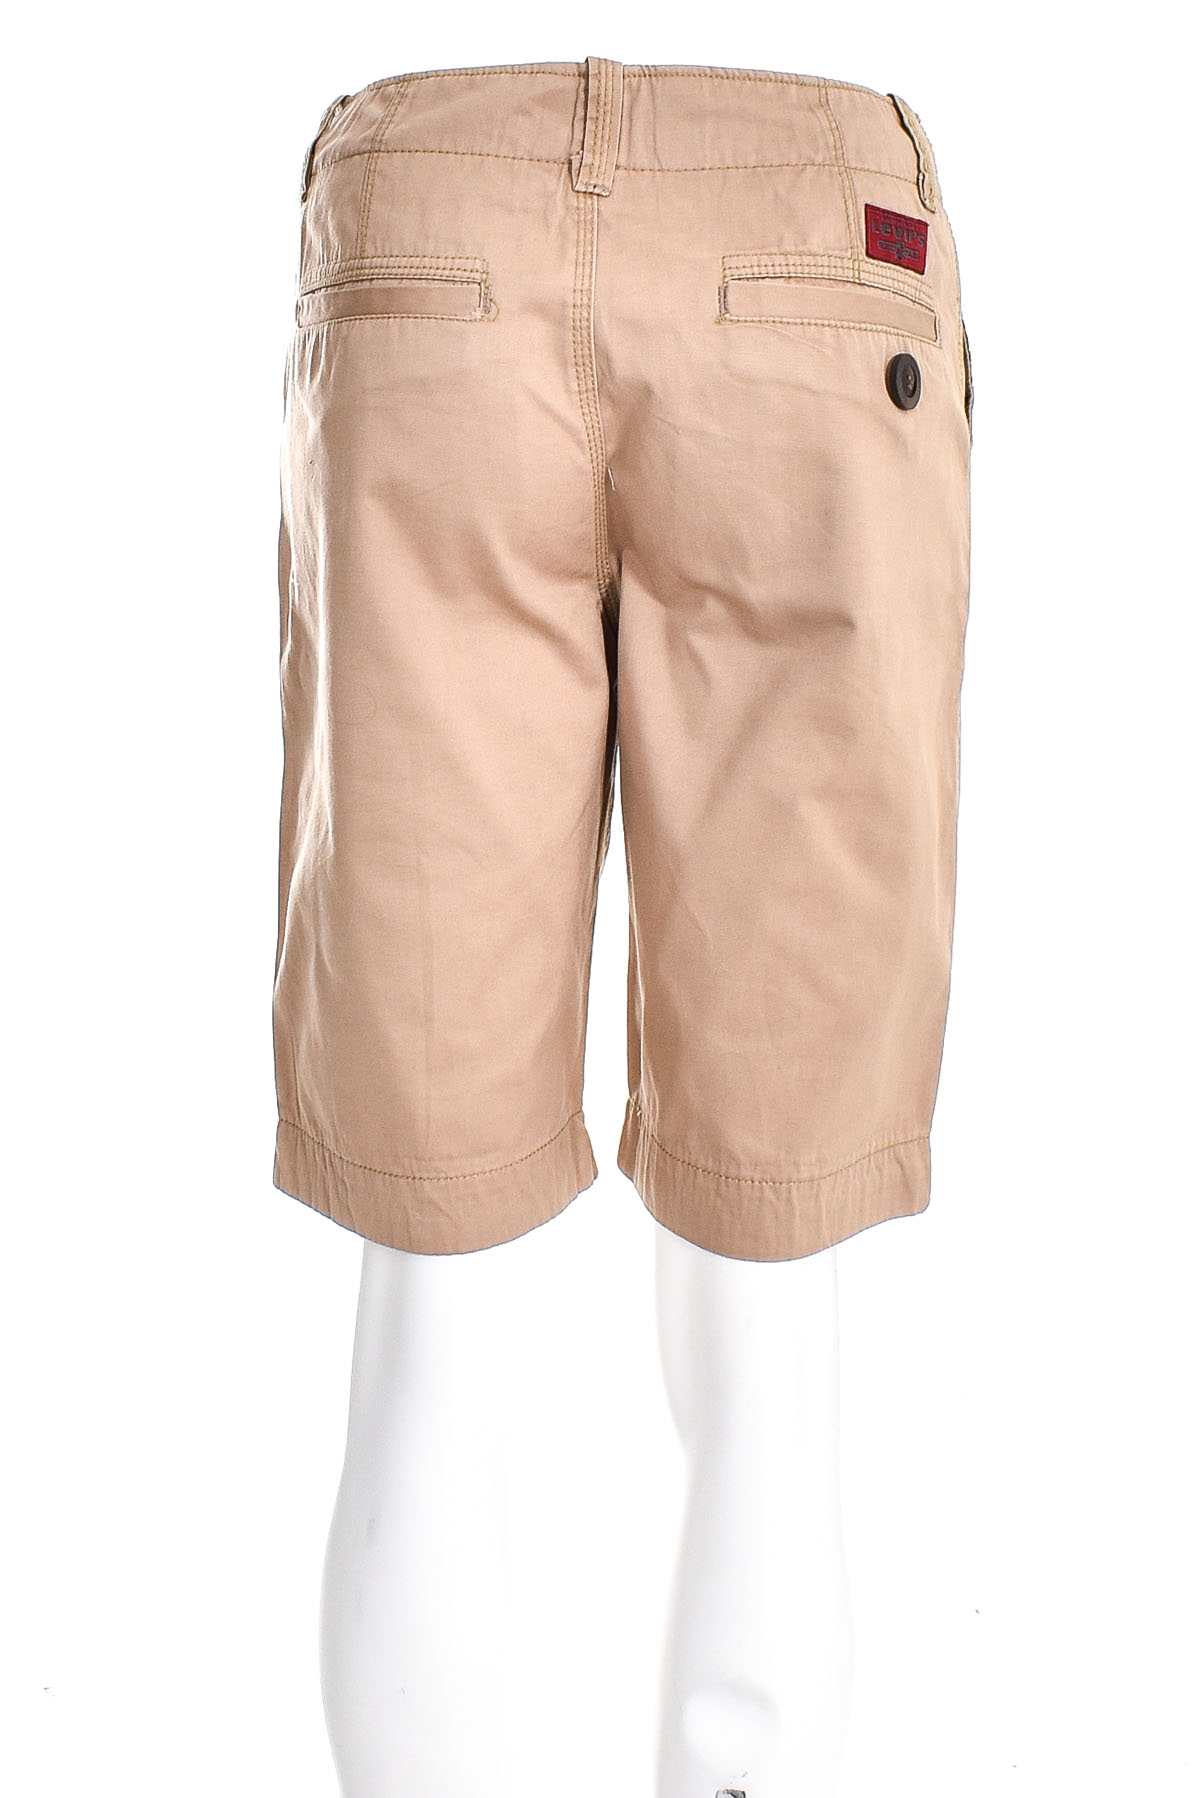 Pantaloni scurți bărbați - LEVI'S - 1